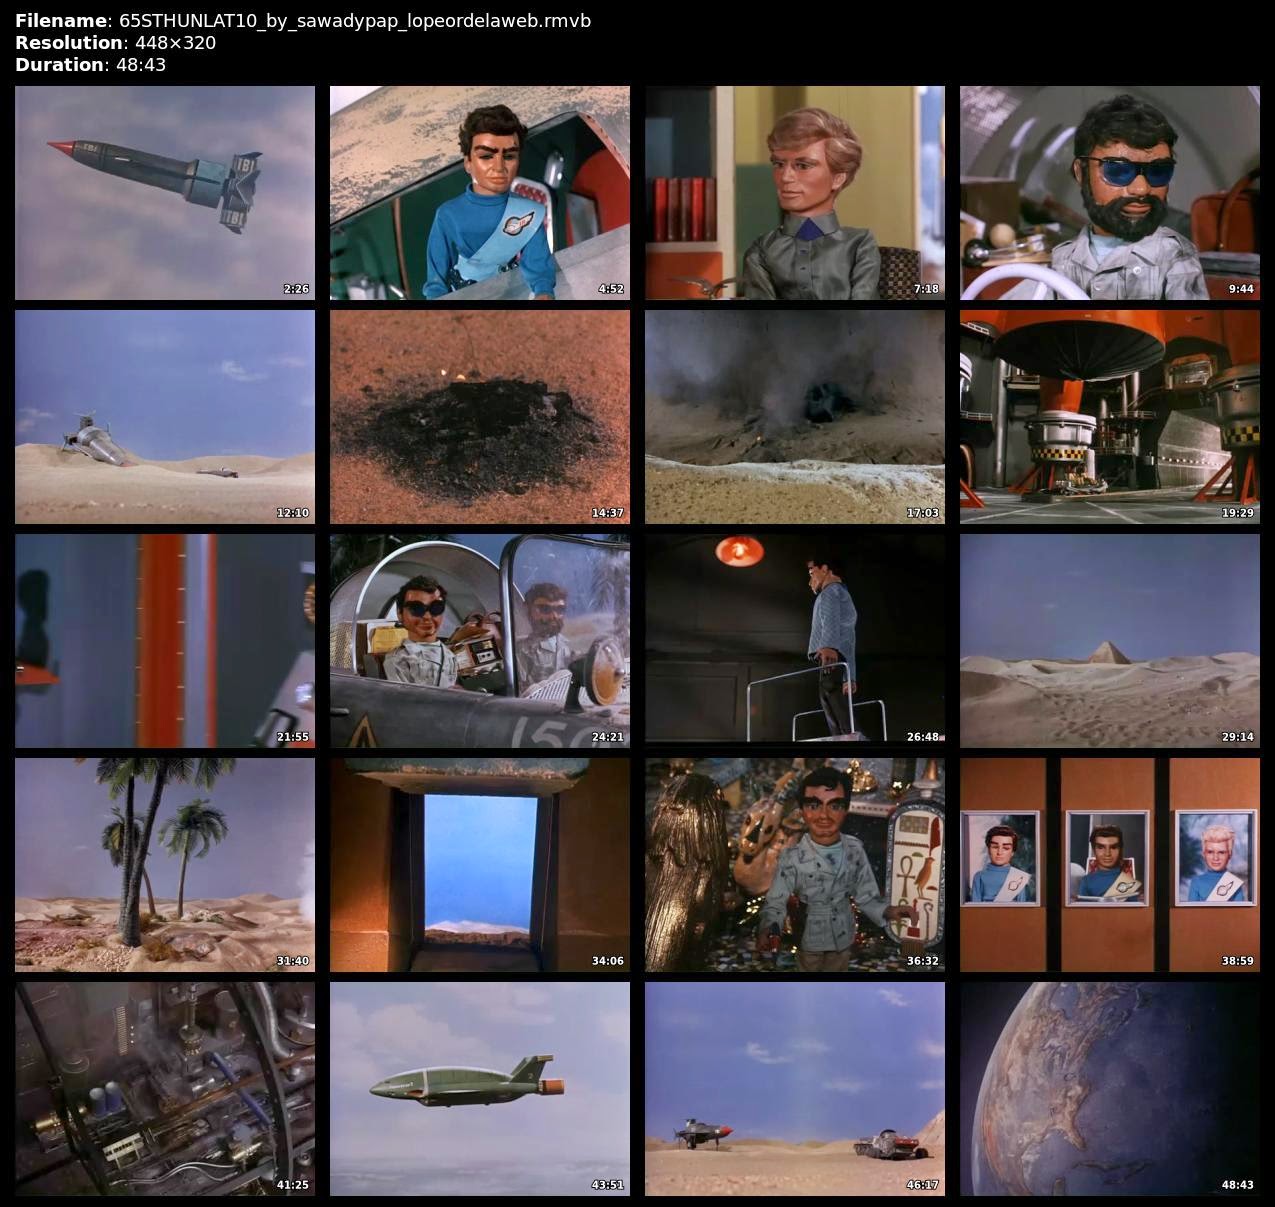 [Serie] Thunderbirds [1965] [TVRip] [Latino]